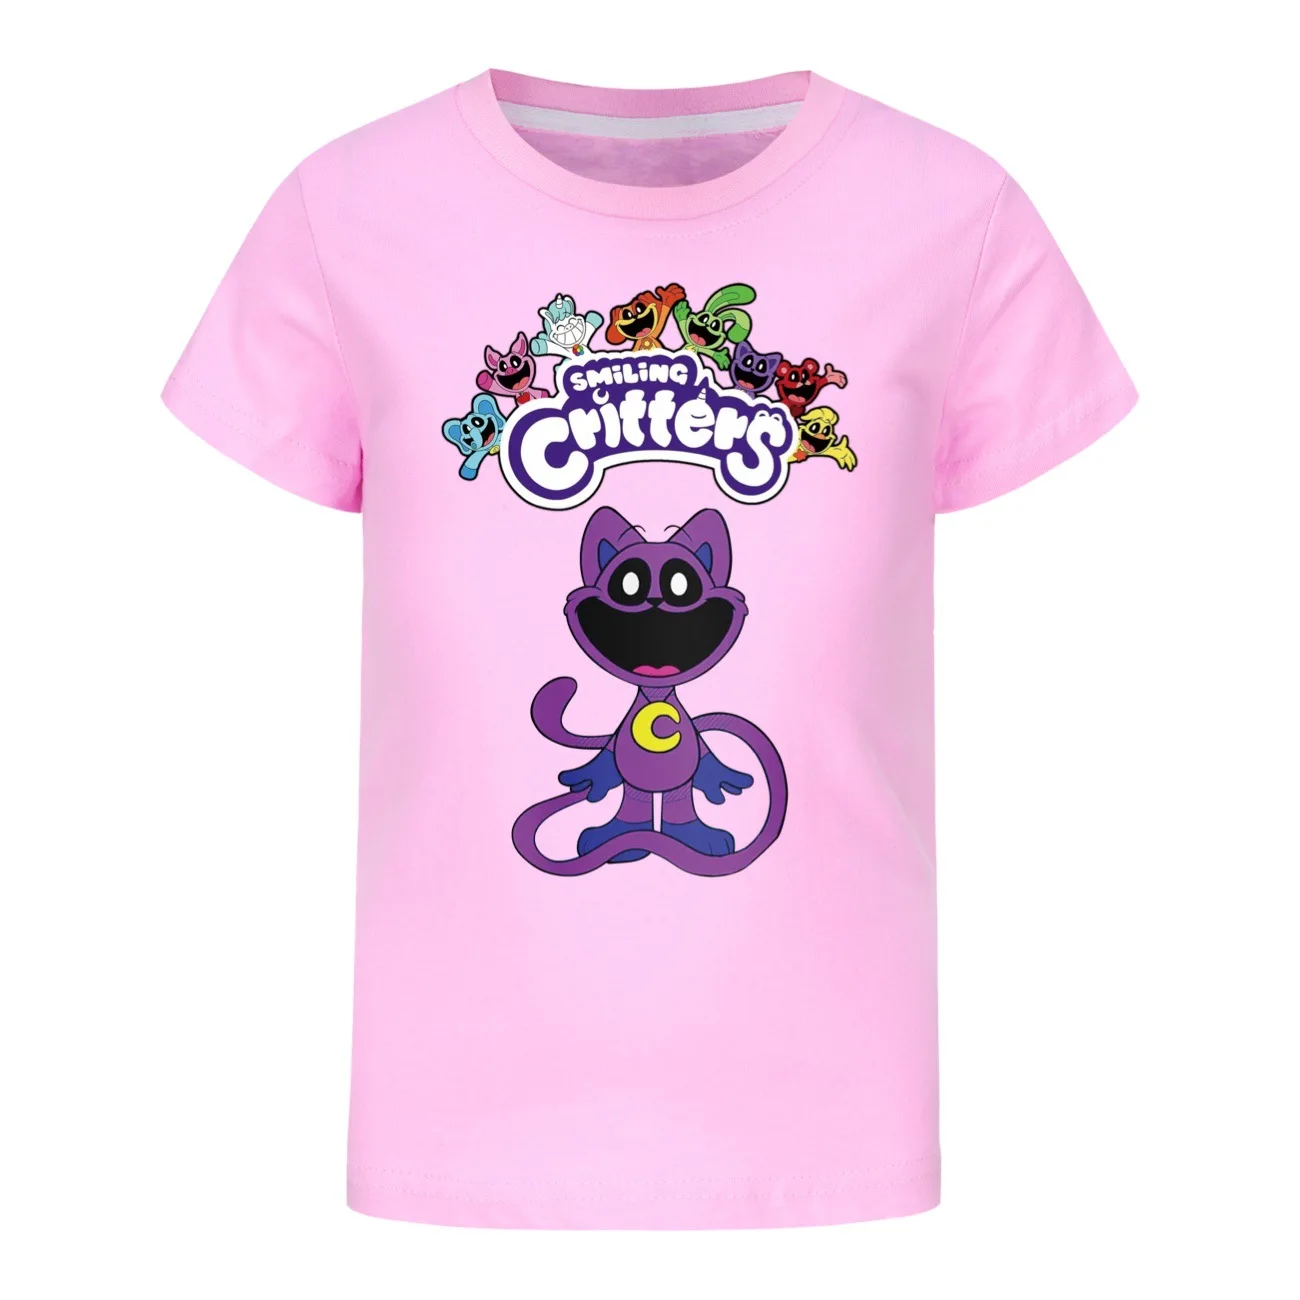 

Футболка с надписью «Game Smile», детская одежда, футболки из чистого хлопка для мальчиков, повседневные топы с коротким рукавом для маленьких девочек, детская одежда